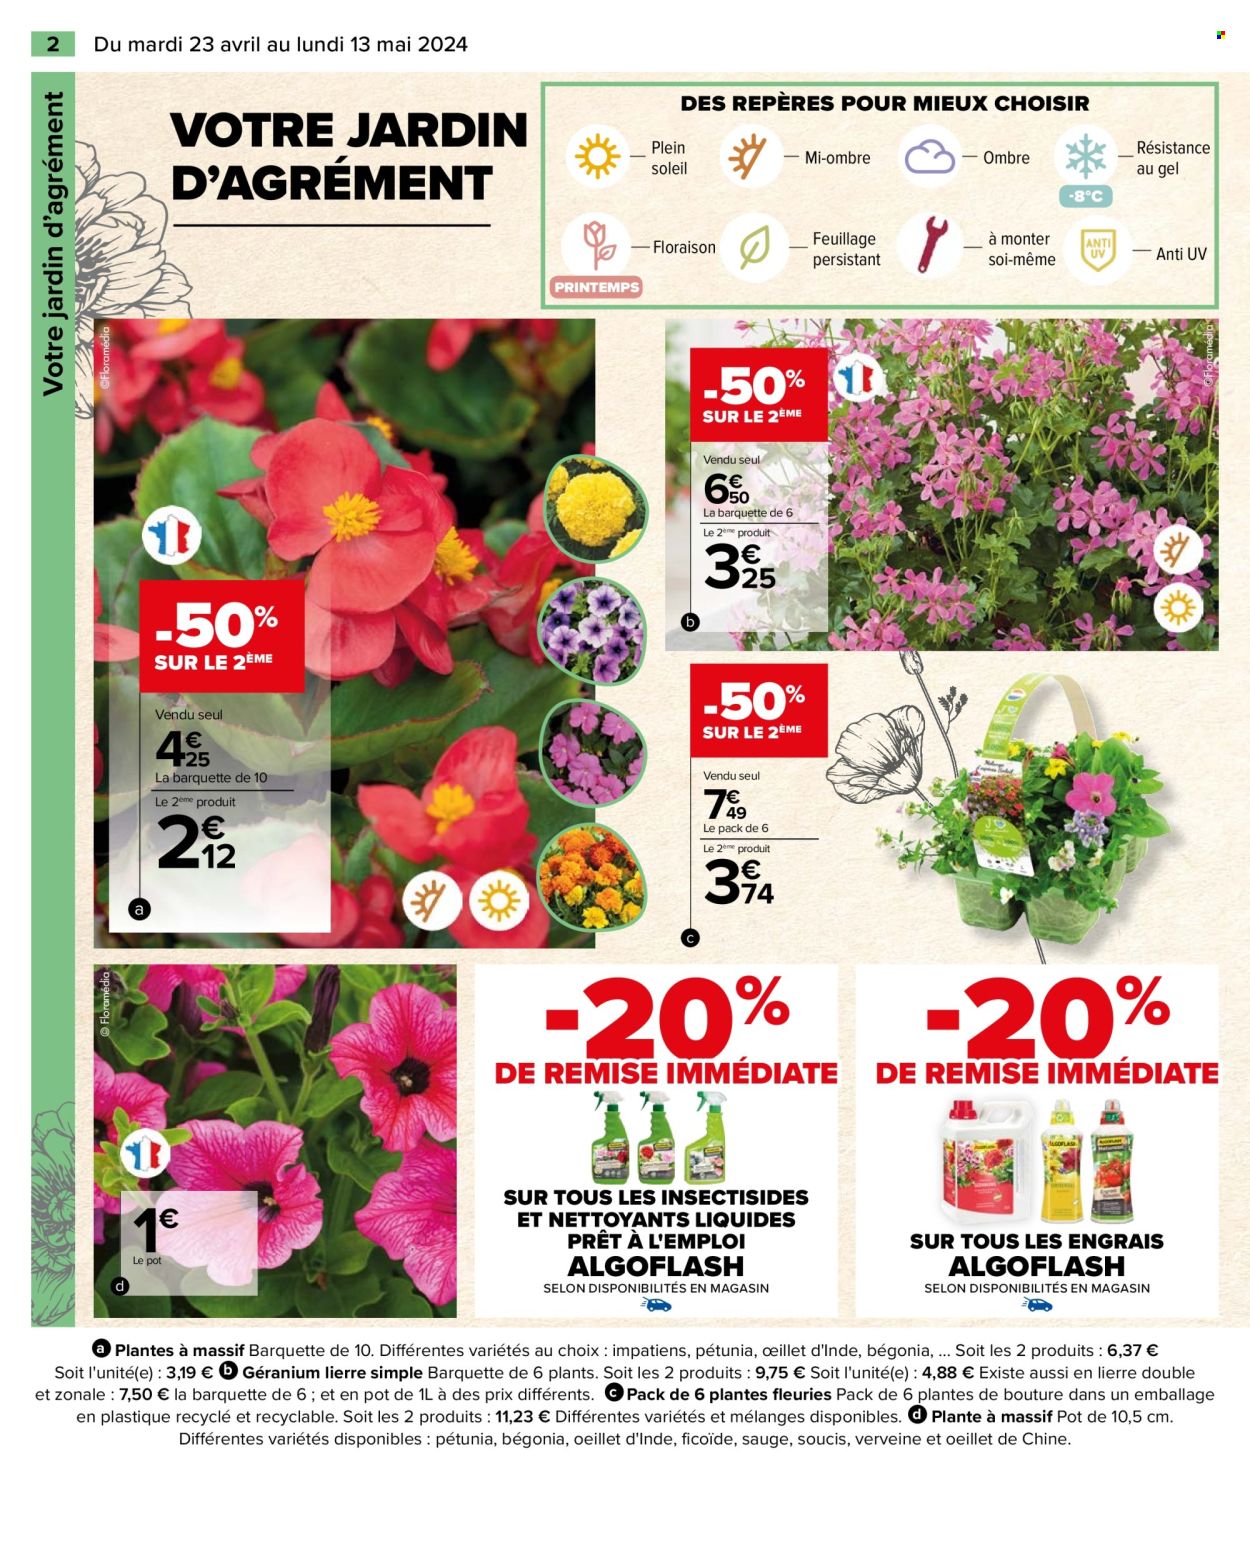 thumbnail - Catalogue Carrefour Hypermarchés - 23/04/2024 - 13/05/2024 - Produits soldés - plantes vivaces, fleur, plante fleurie, Algoflash, engrais. Page 4.